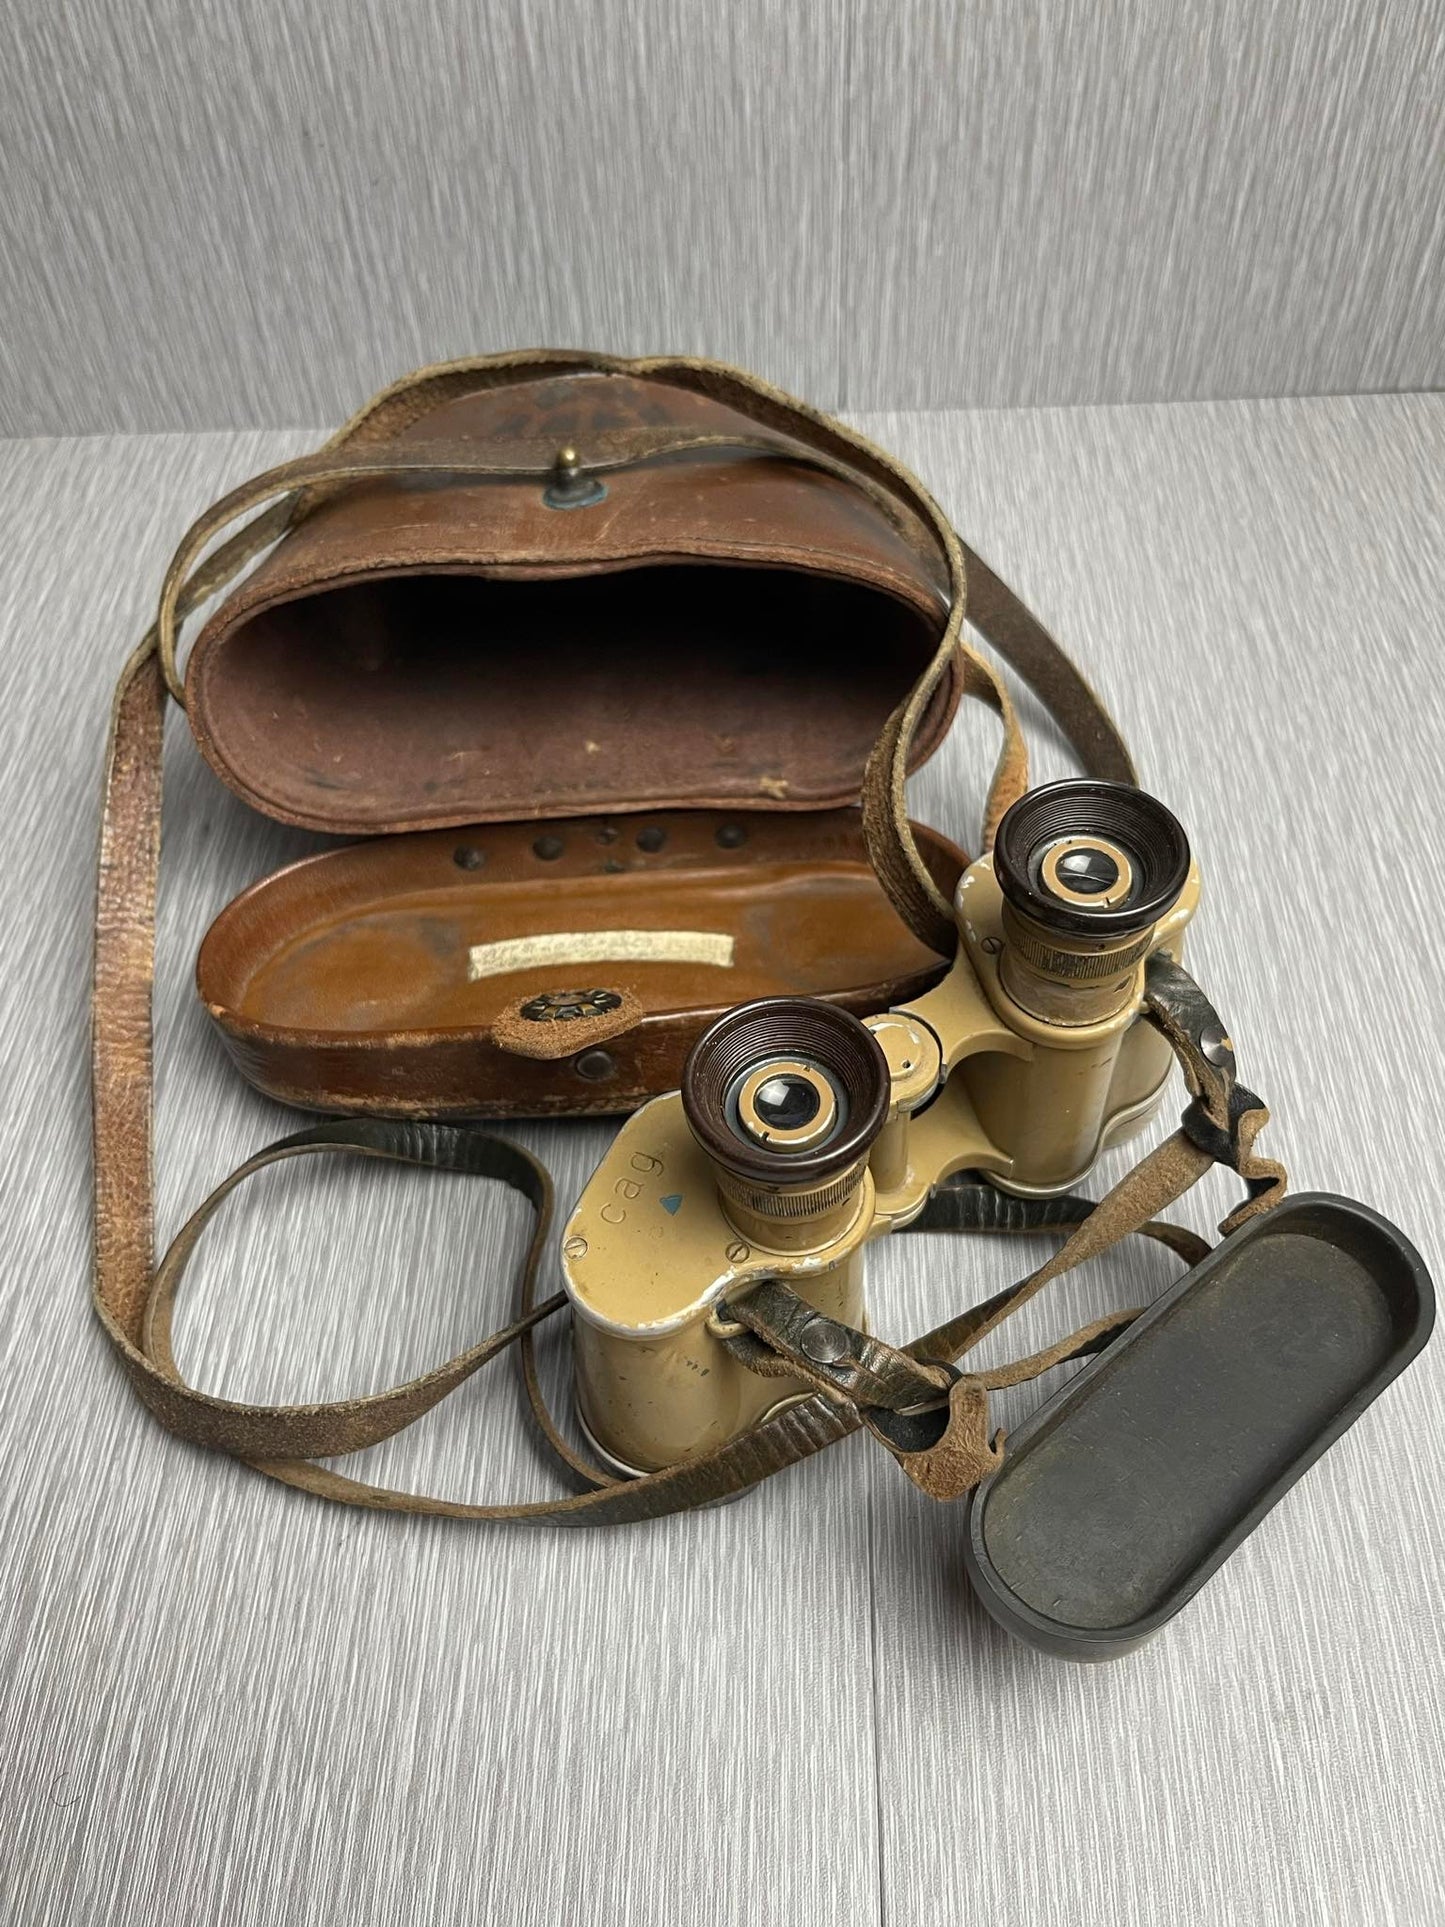 GERMAN WW2 DIENSTGLAS 6x30 TAN PAINTED ‘CAG’ BINOCULARS CAPTURED BY US G.I. MEDIC W/ LEATHER CASE NAMED!